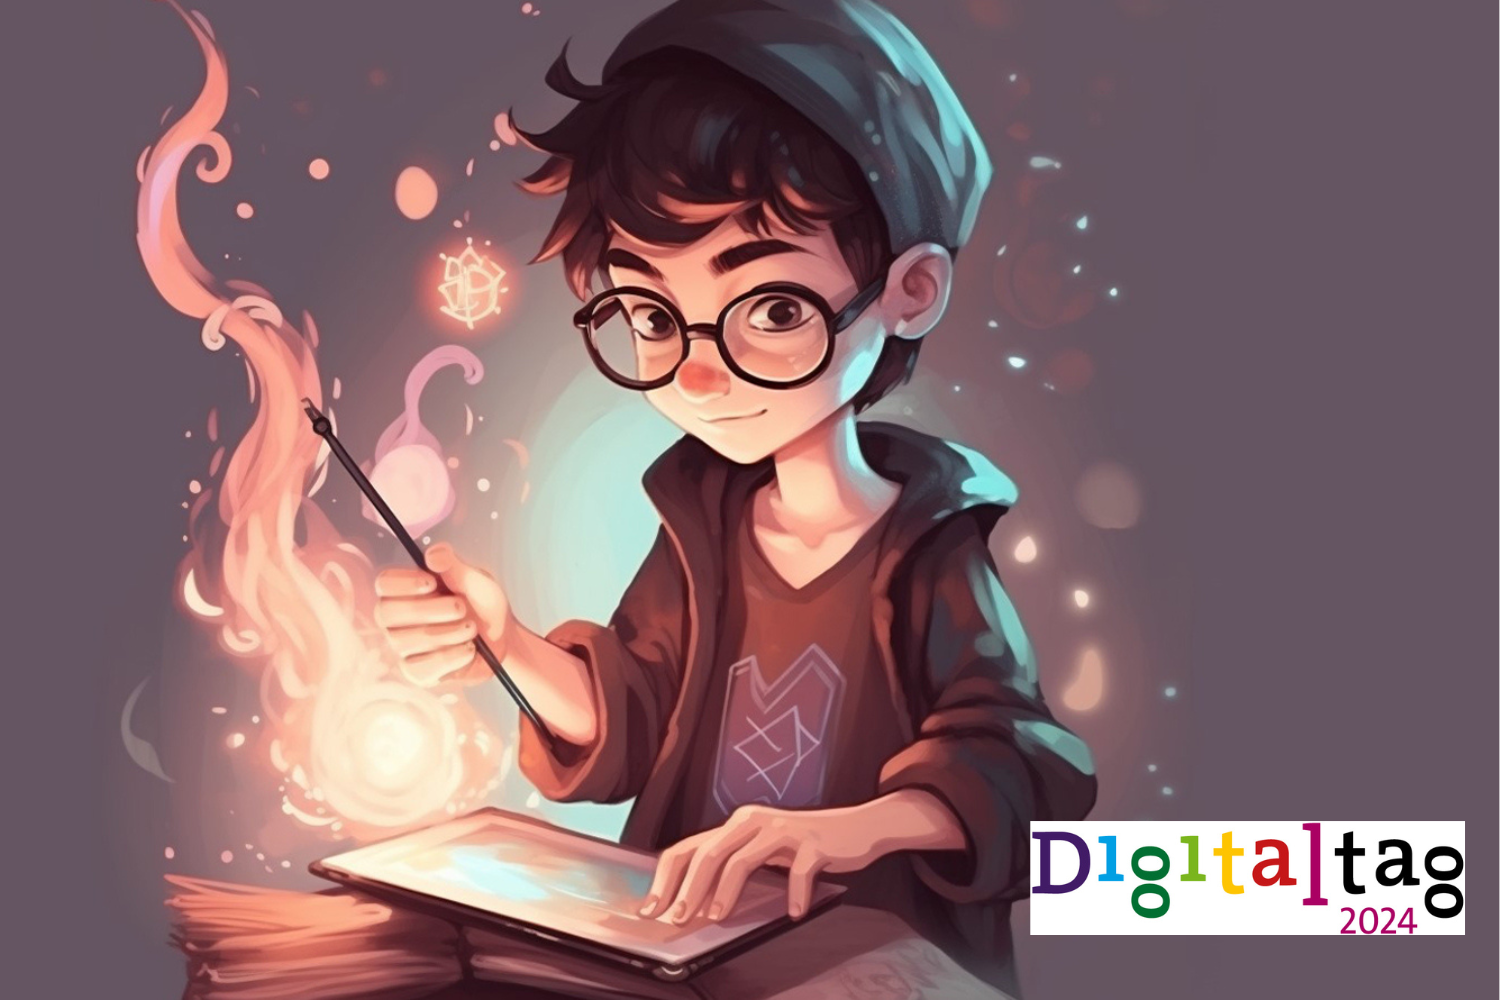 Küçük bir çocuk (çizgi film karakteri) sihir ve dijital etiket logosu yapmaya çalışır.